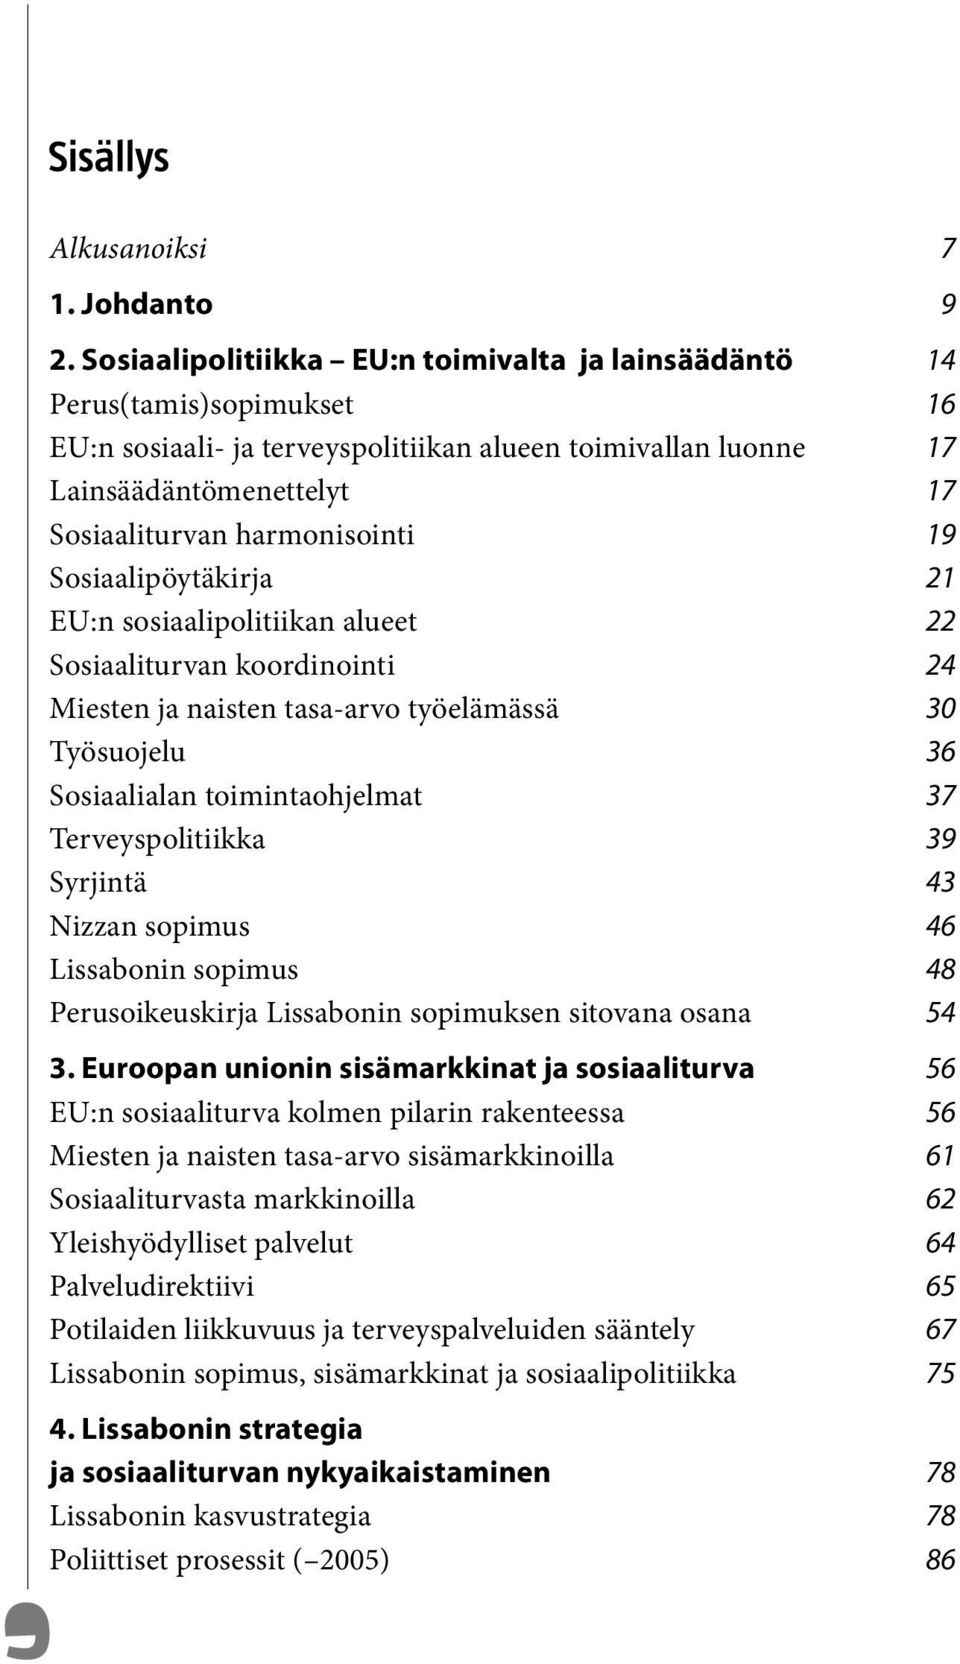 19 Sosiaalipöytäkirja 21 EU:n sosiaalipolitiikan alueet 22 Sosiaaliturvan koordinointi 24 Miesten ja naisten tasa-arvo työelämässä 30 Työsuojelu 36 Sosiaalialan toimintaohjelmat 37 Terveyspolitiikka